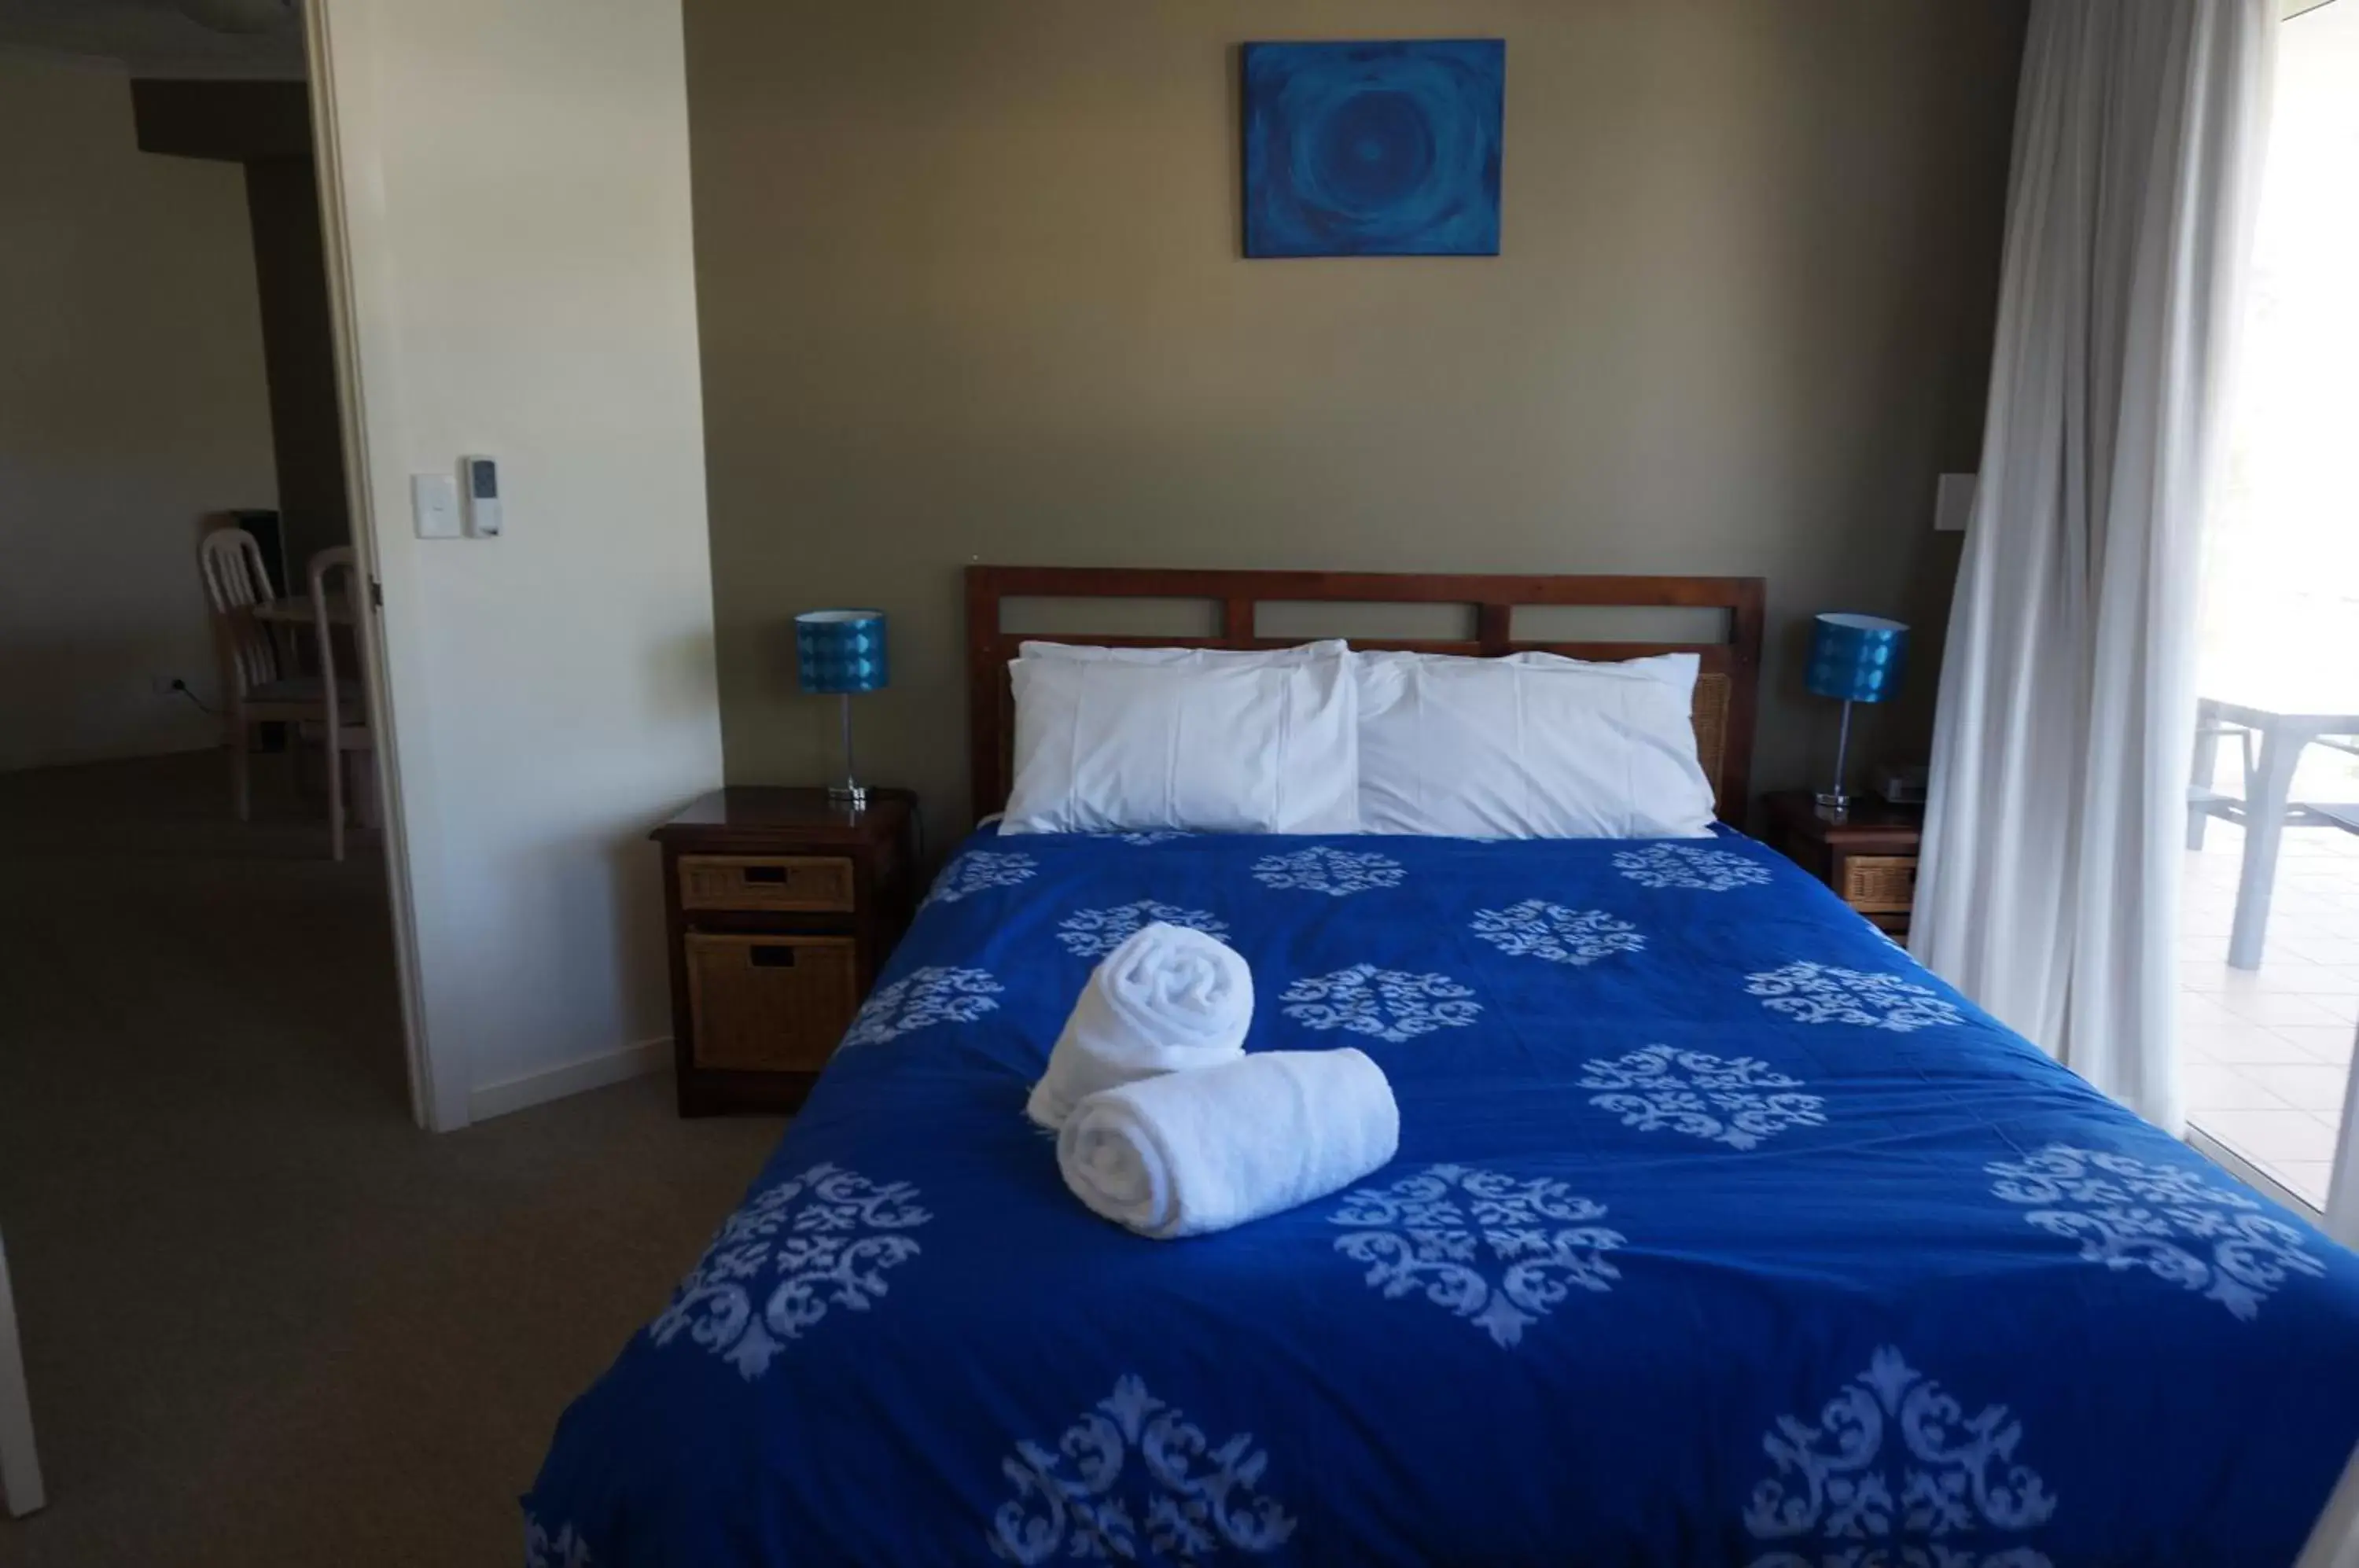 Bedroom, Room Photo in Moorings Beach Resort